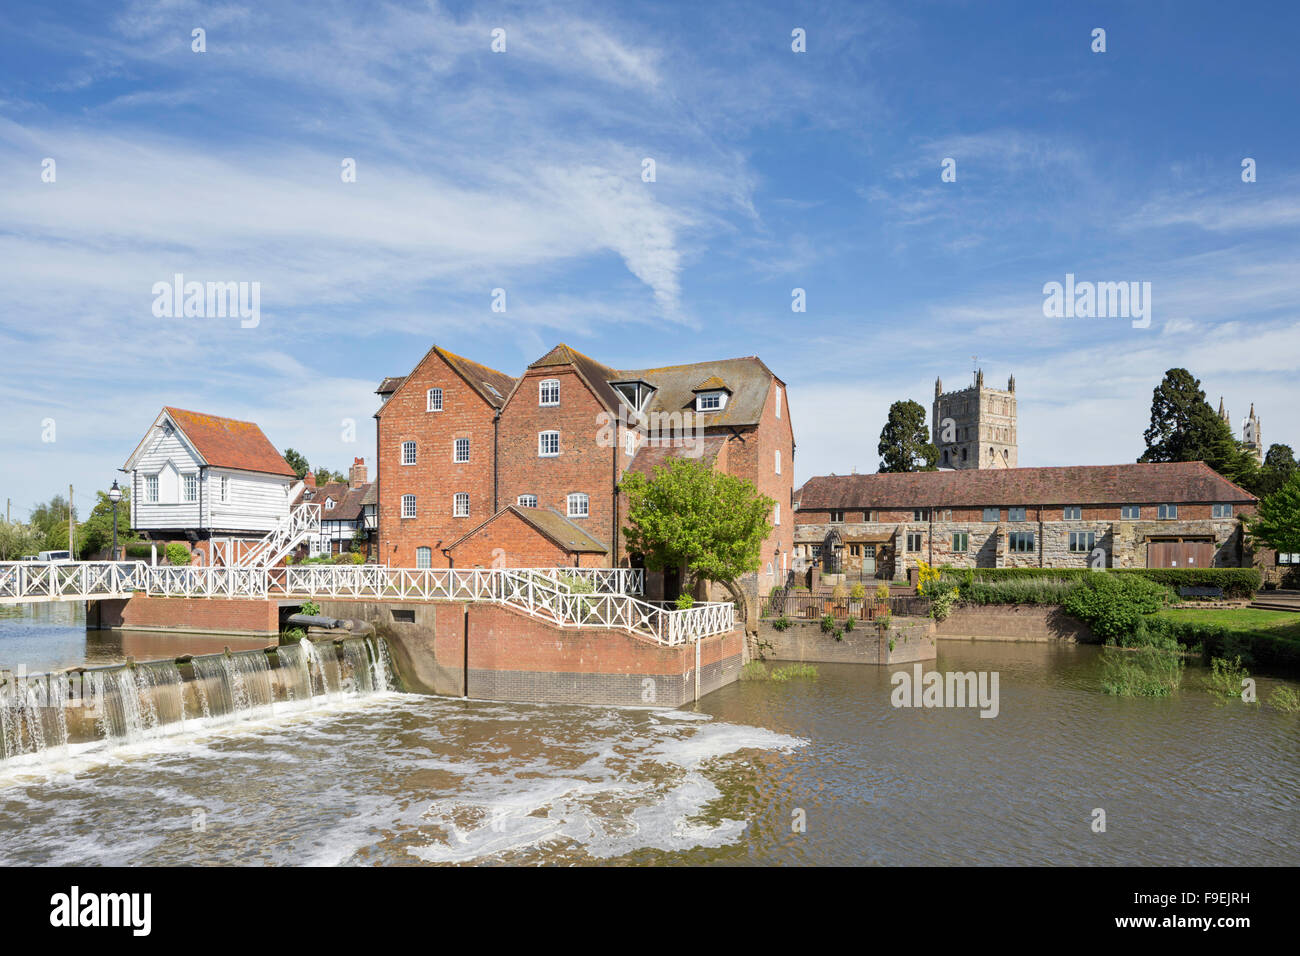 L'Abbaye moulin à eau sur l'usine Avon, Tewkesbury, Gloucestershire, England, UK Banque D'Images